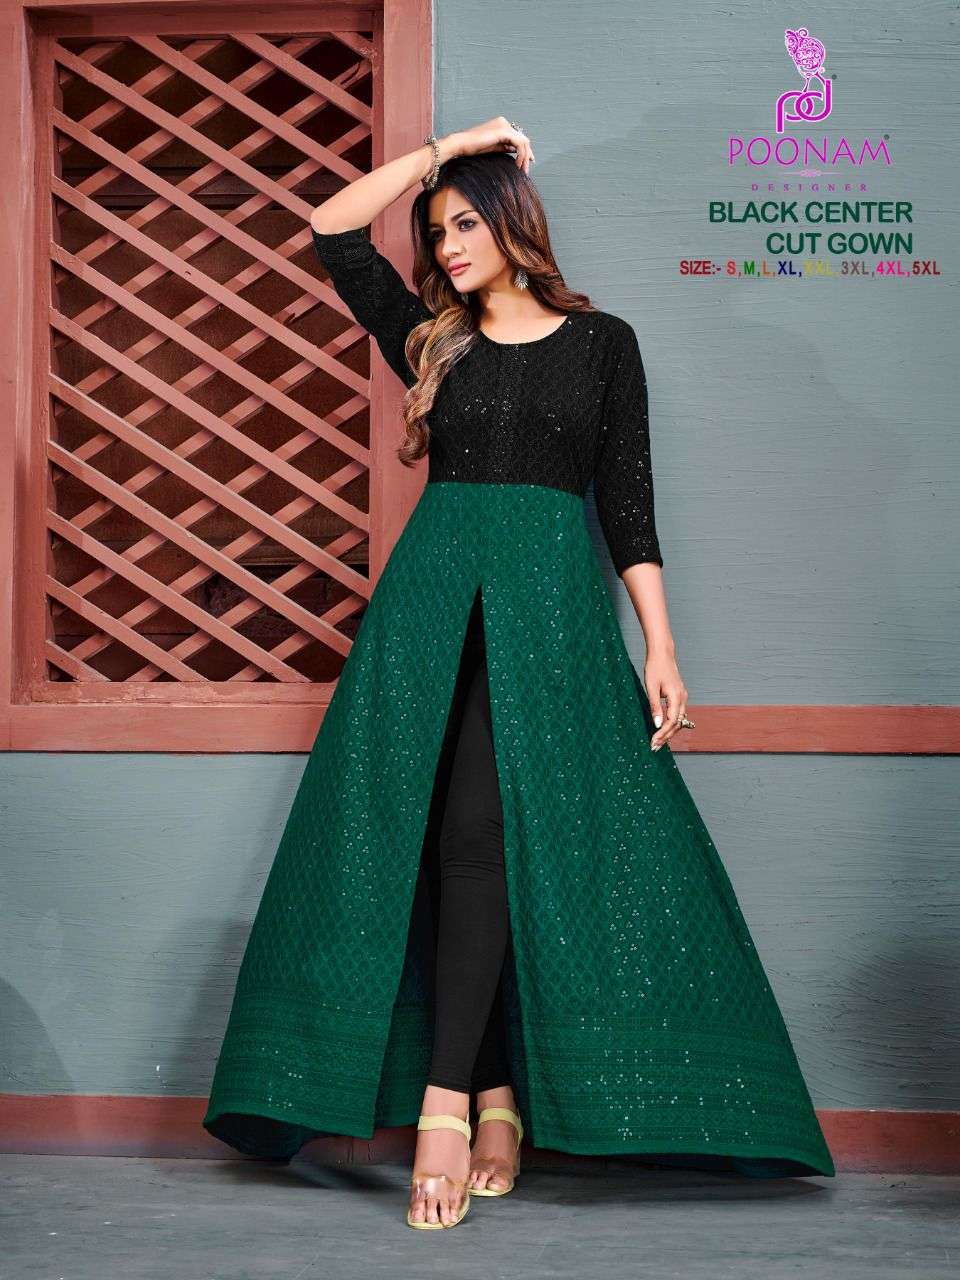 poonam designer black center cut gown catalogue wholesale price online supplier surat